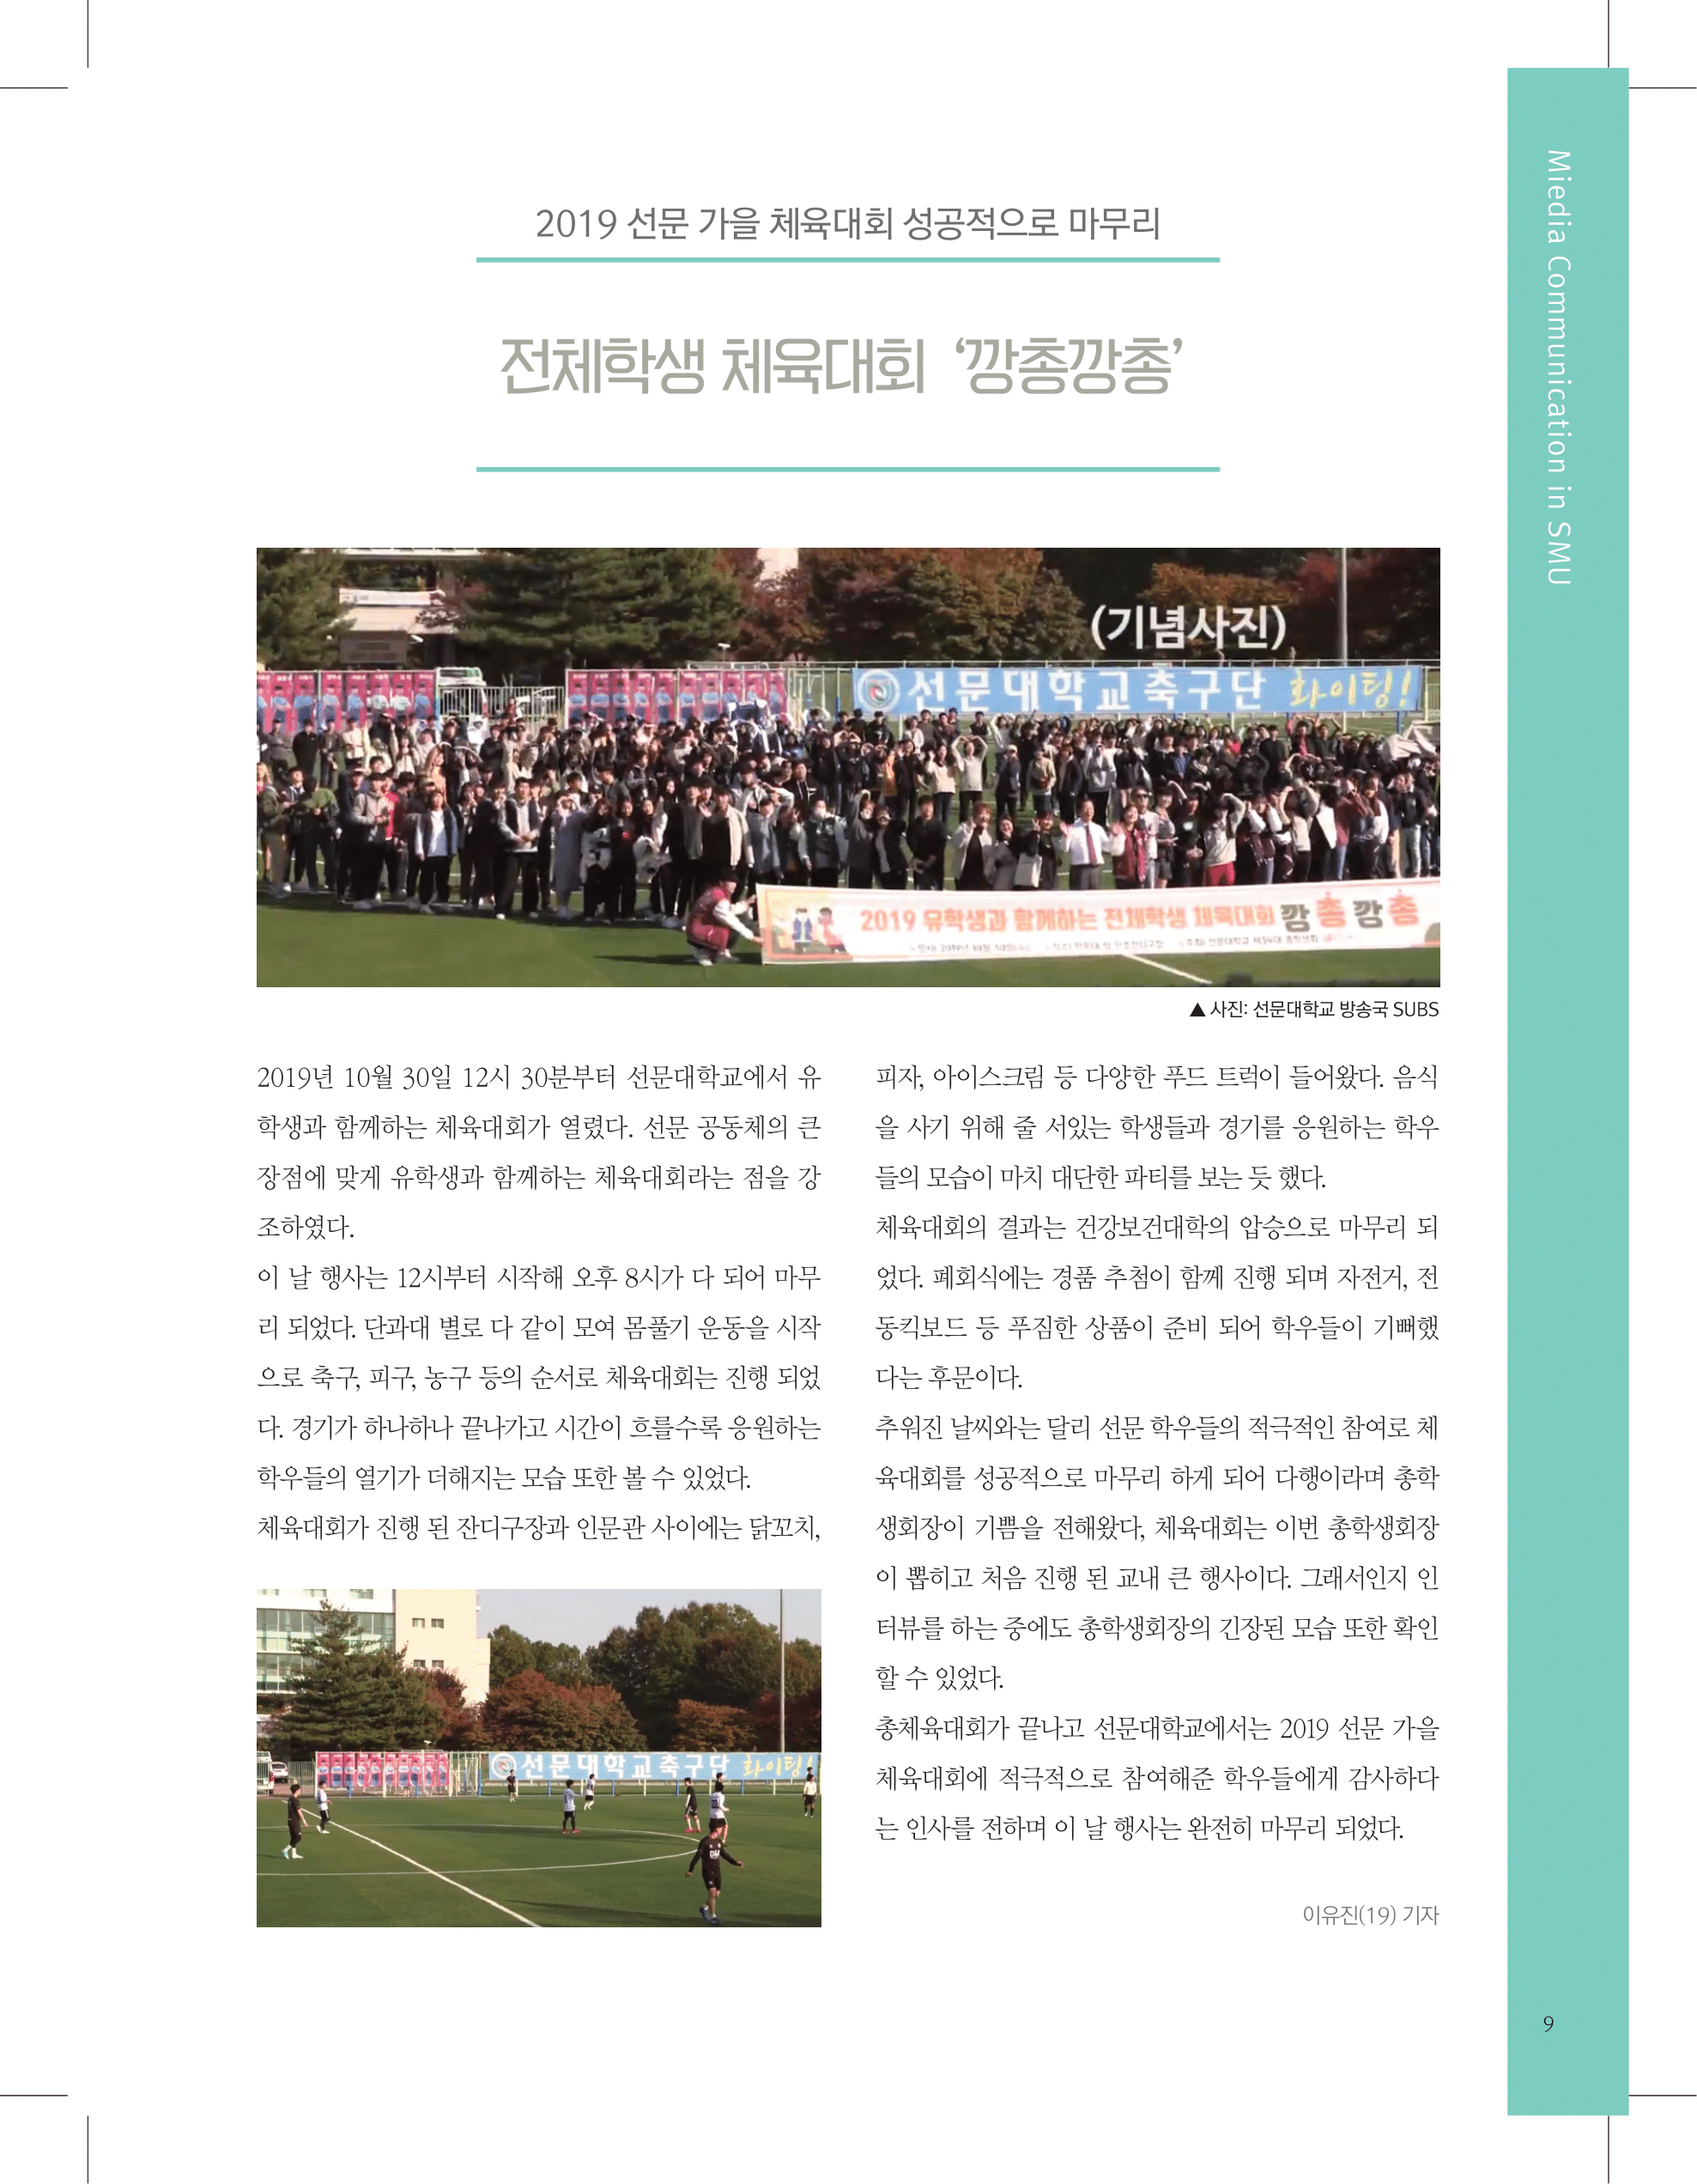 뜻새김 신문 74호 9